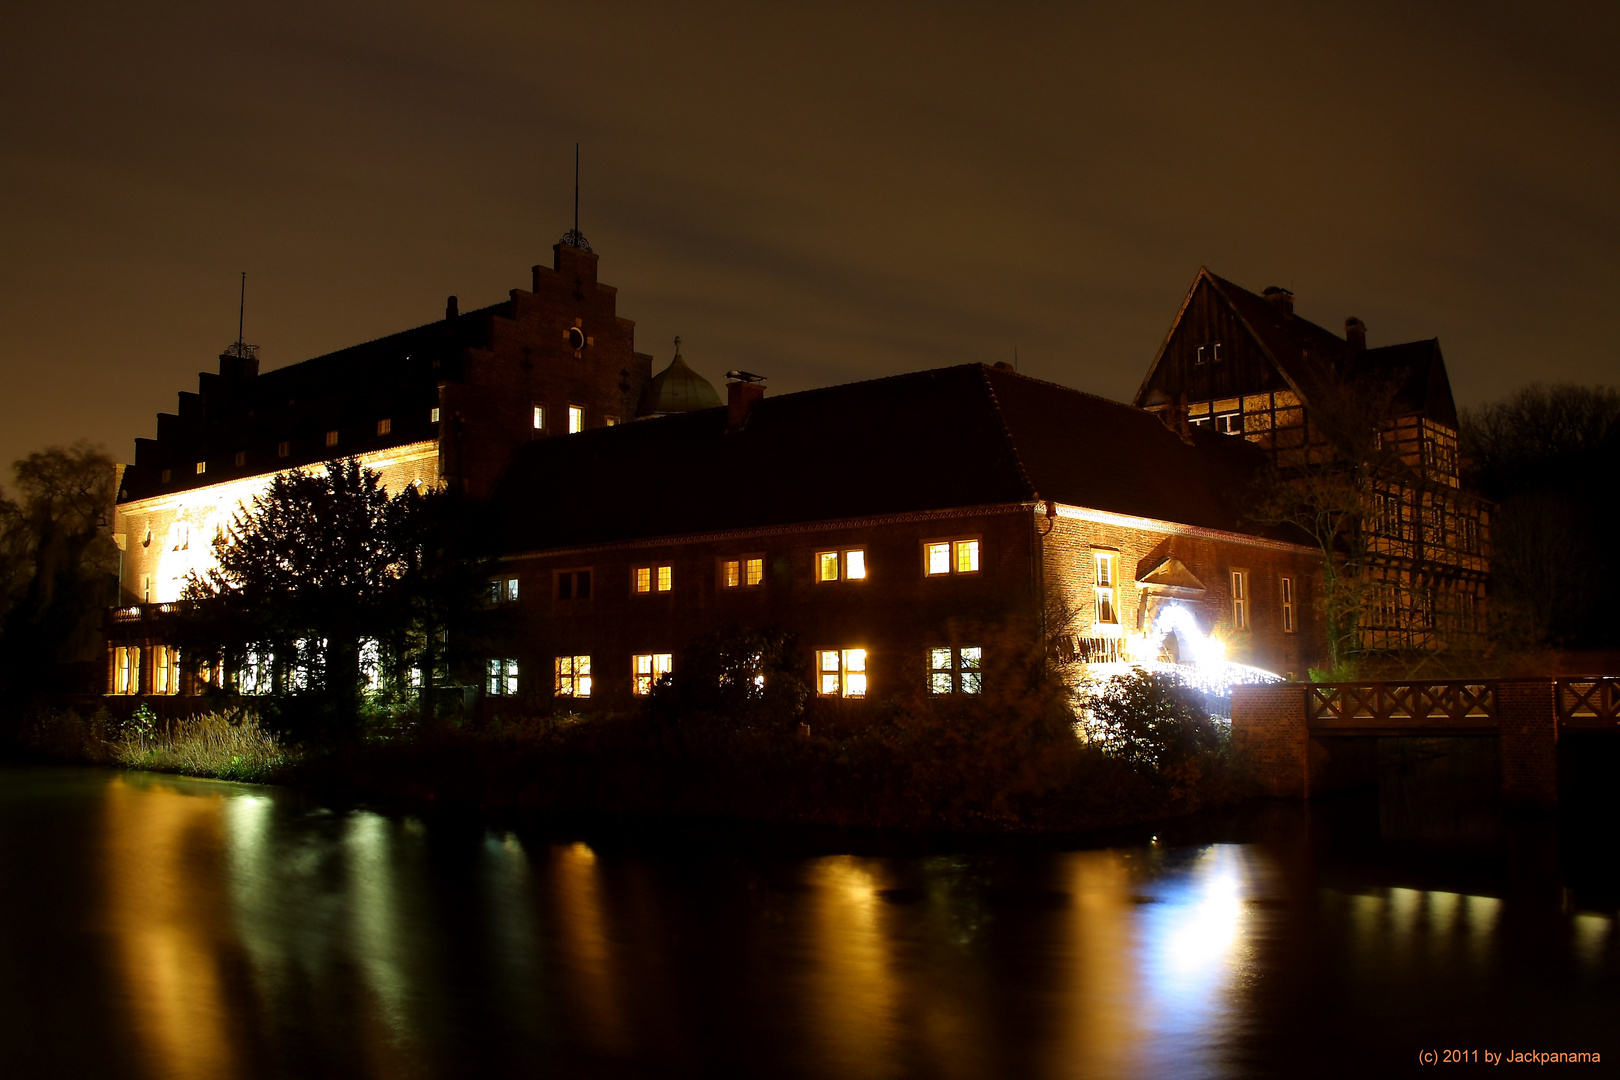 Hellerleuchtetes Wasserschloss Wittringen am späten Abend